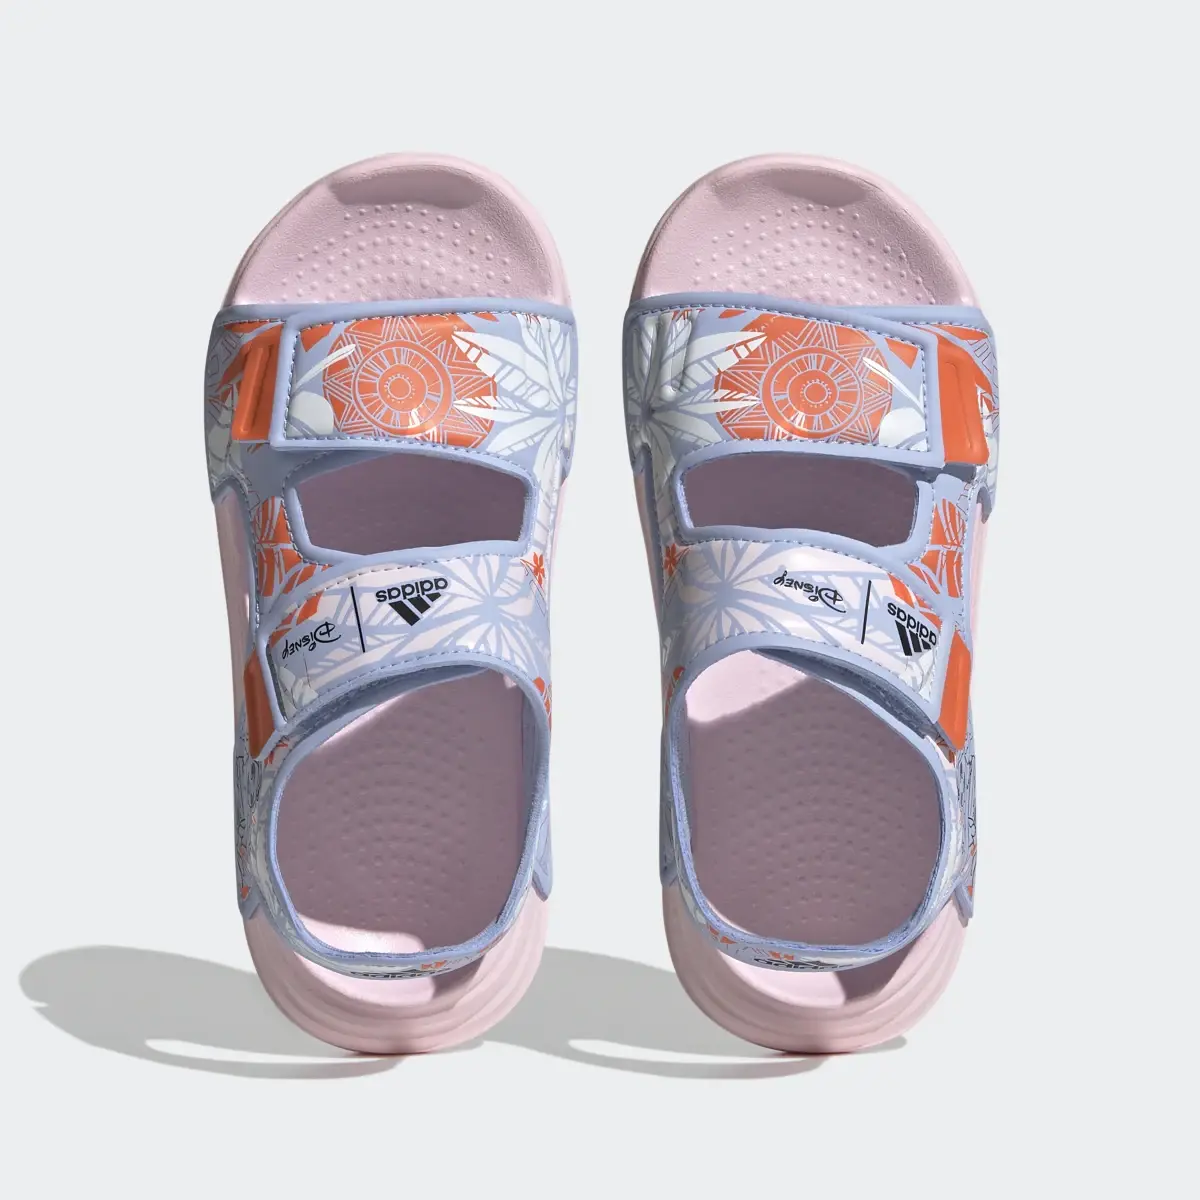 Adidas Sandálias de Natação AltaSwim Vaiana adidas x Disney. 3